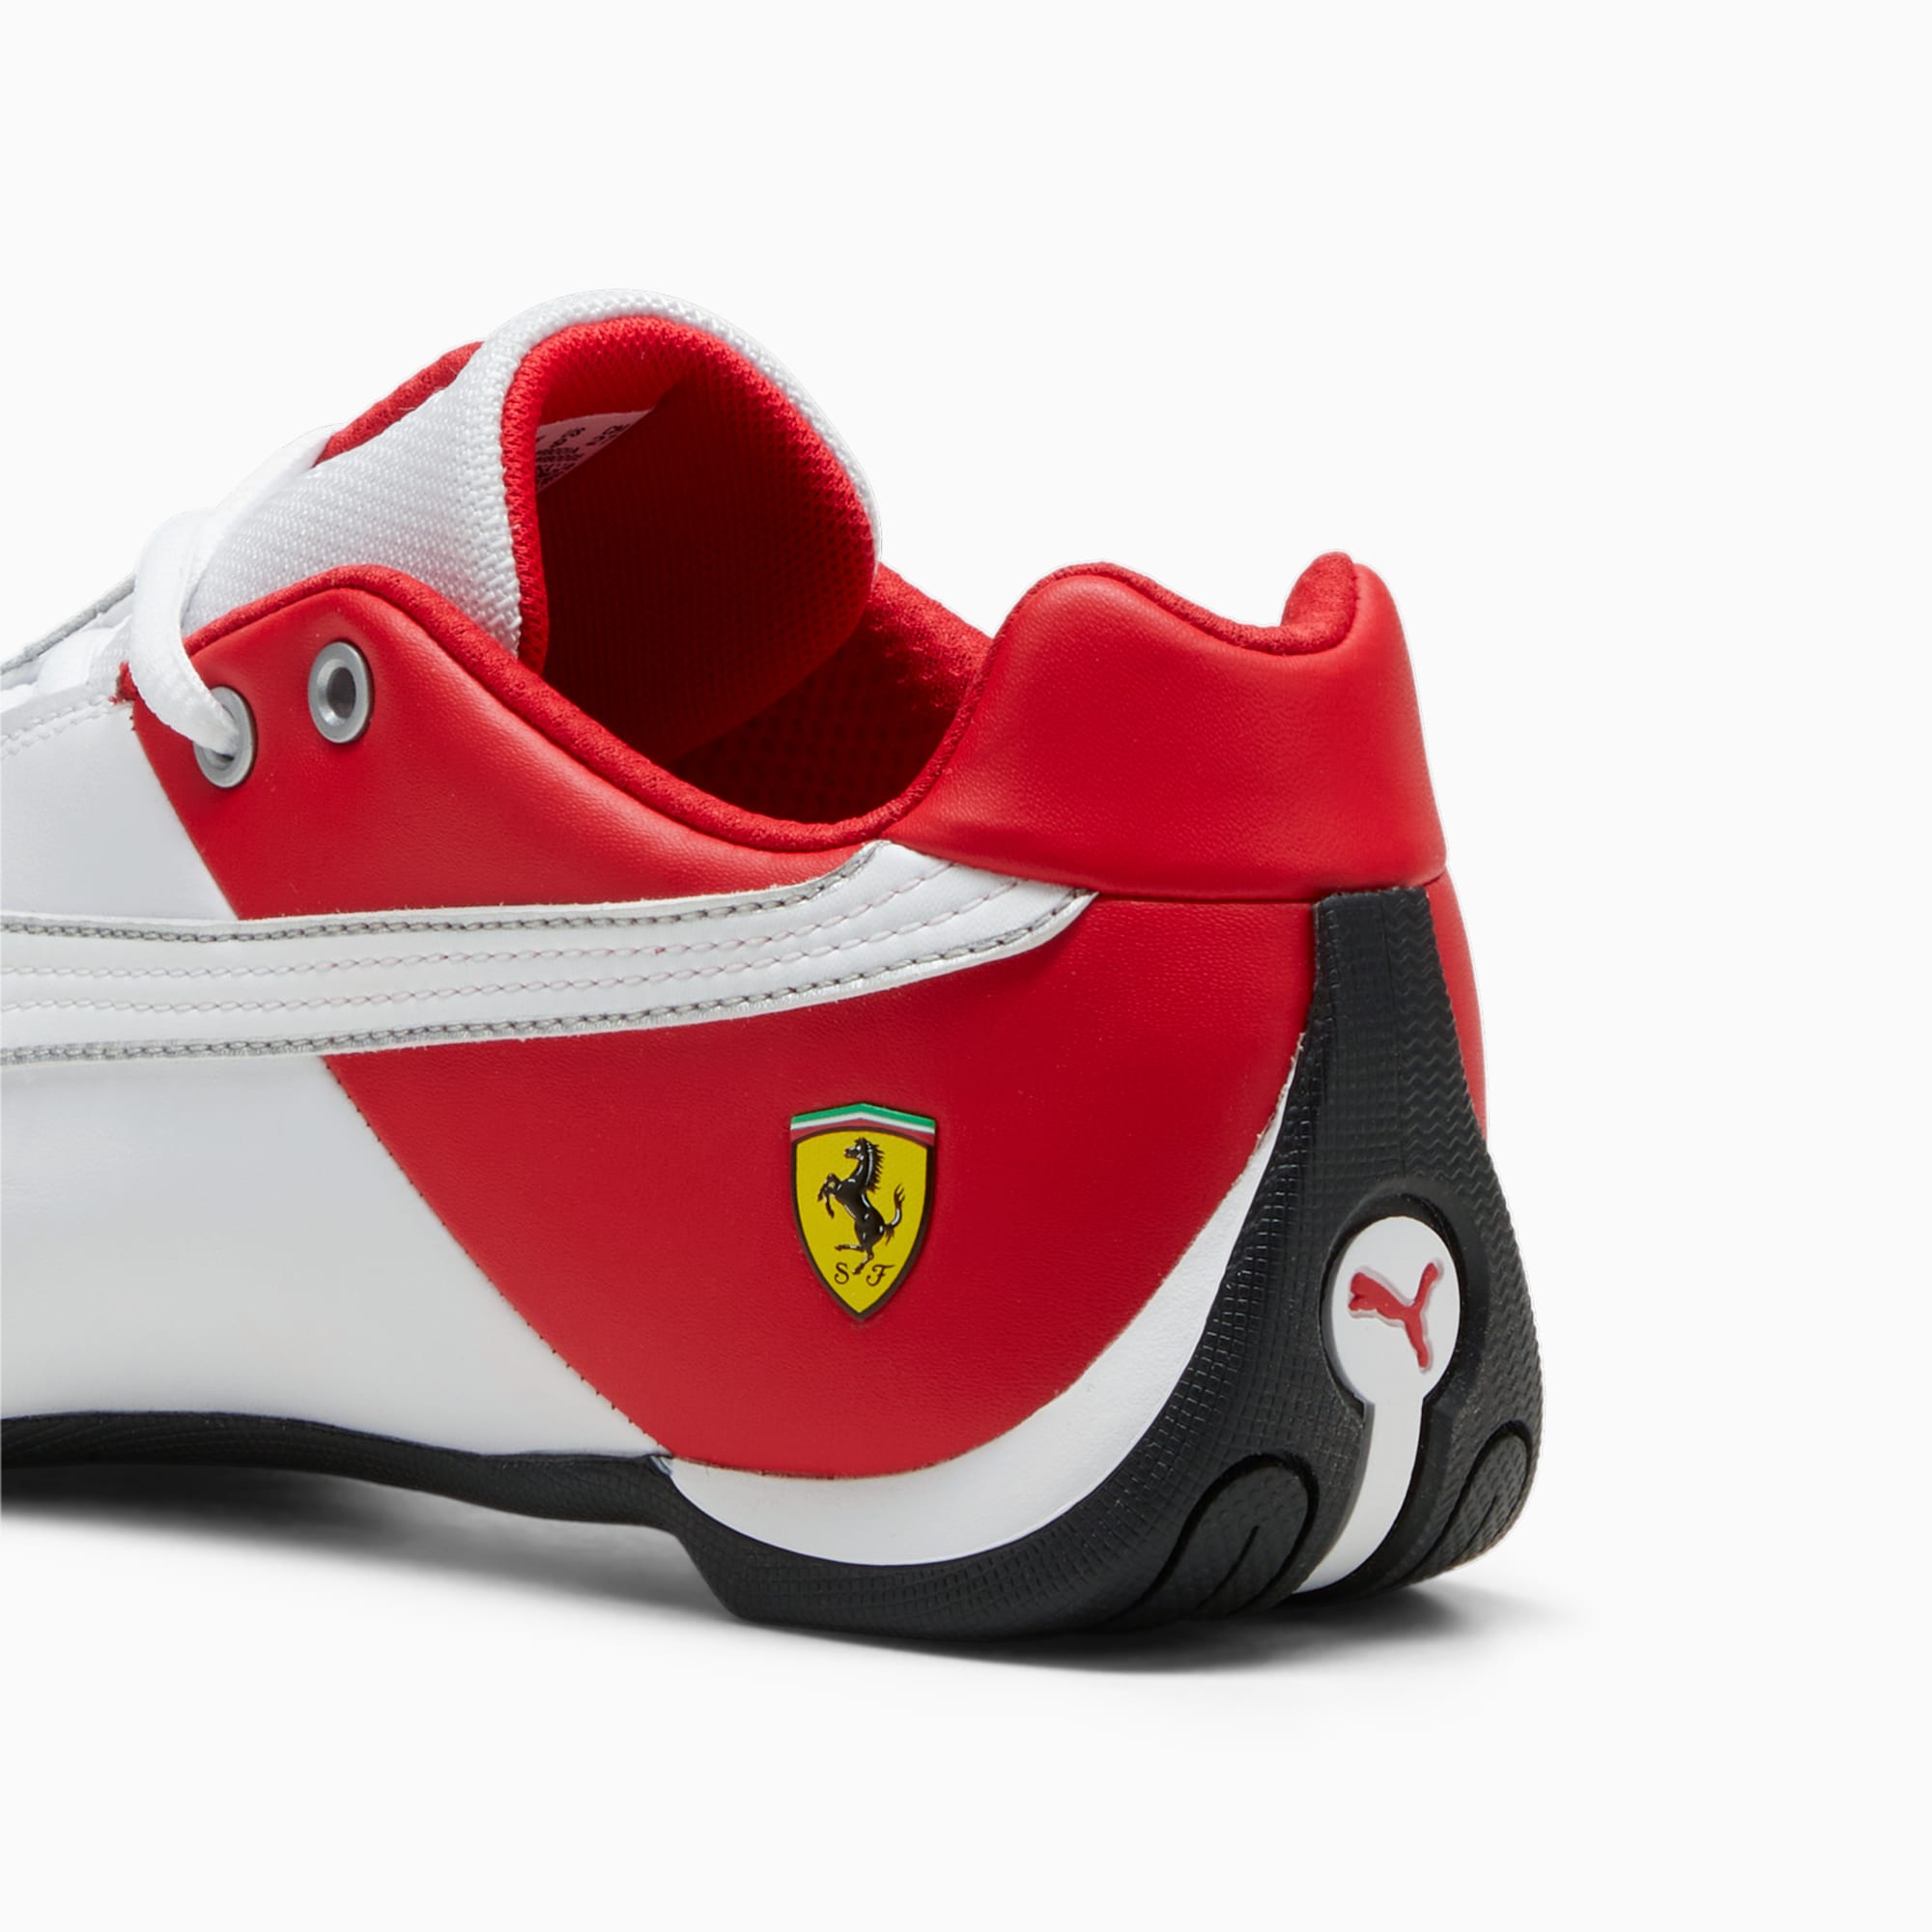 PUMA Scuderia Ferrari Future Cat OG Motorsportschuhe, Weiß/Rot, Größe: 39, Schuhe